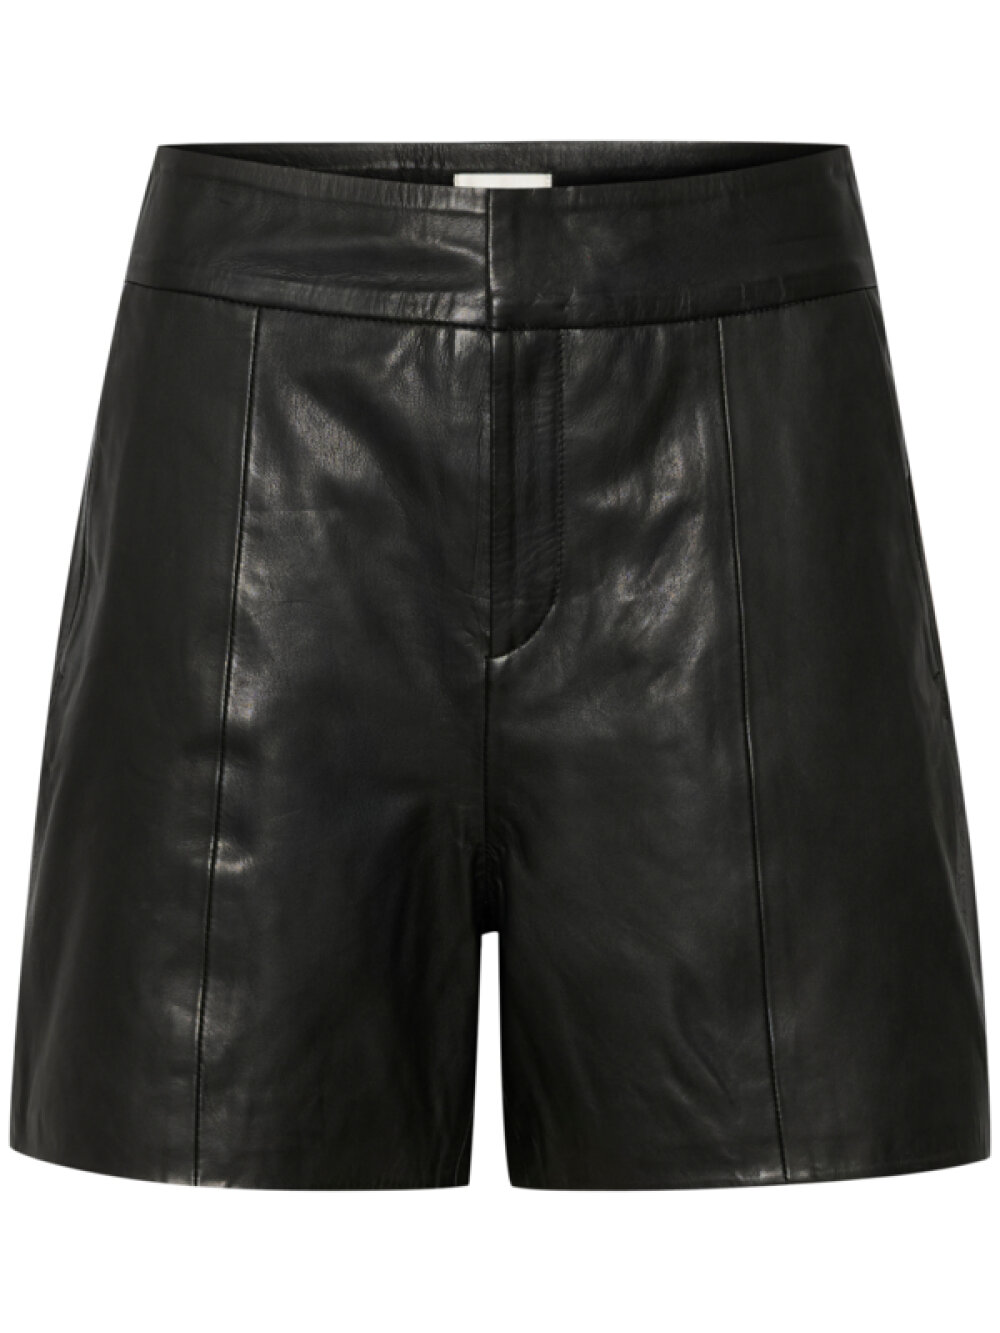 My Essential Wardrobe - My Essential Wardrobe 12 The Leather Shorts 100031